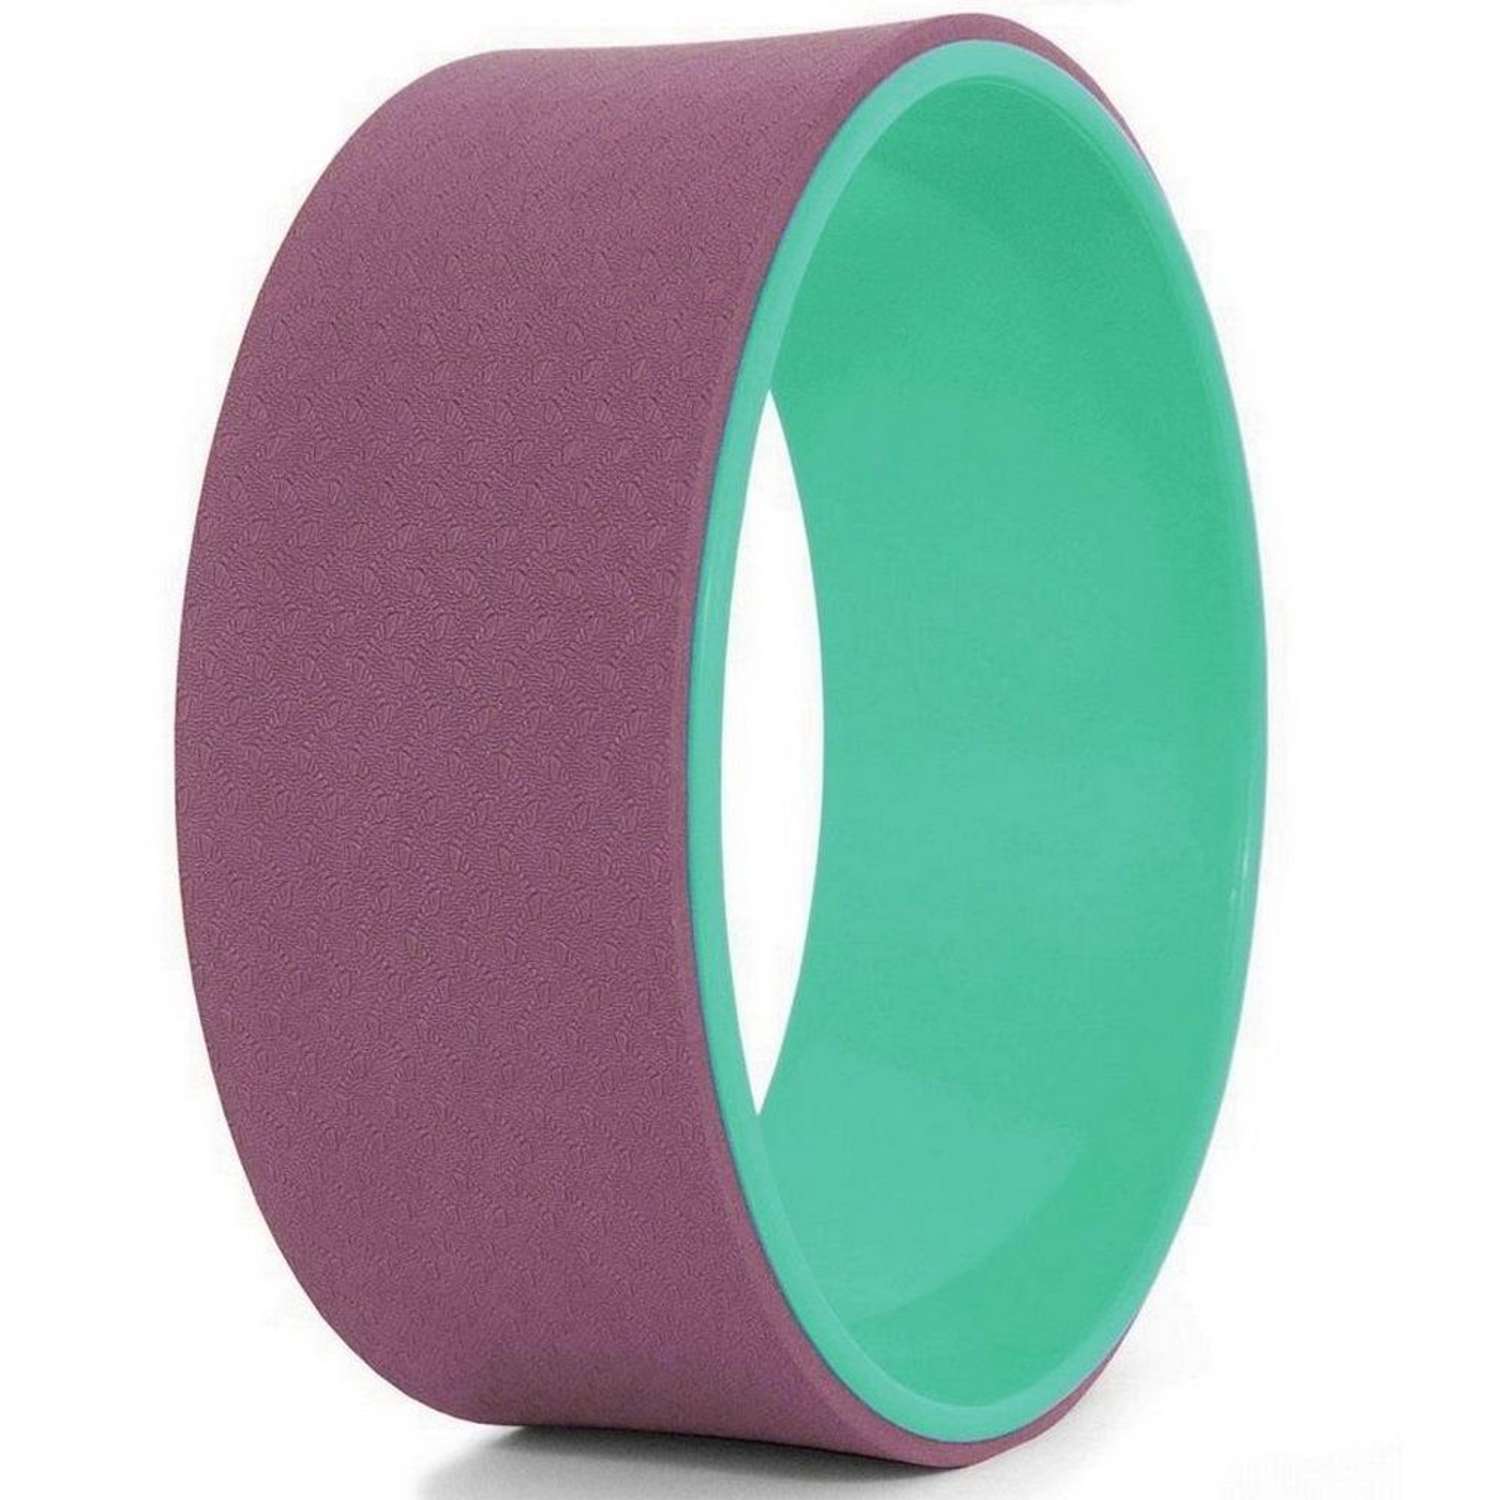 Колесо для йоги STRONG BODY фитнеса и пилатес 30 см х 12 см пурпурно-зеленое - фото 2